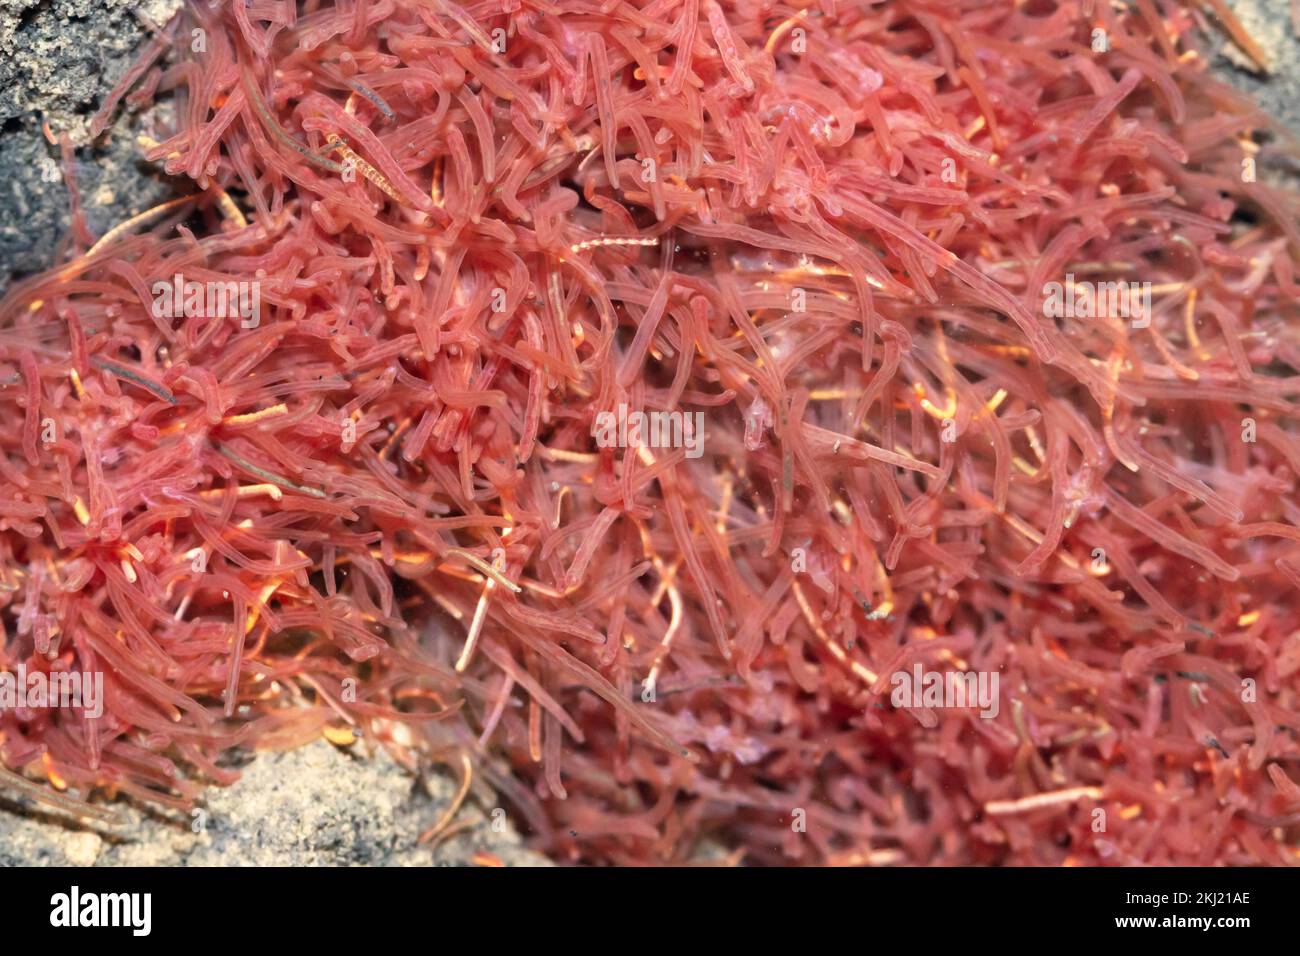 Aquatic tubifex worms in stream. Sussex, UK. Stock Photo